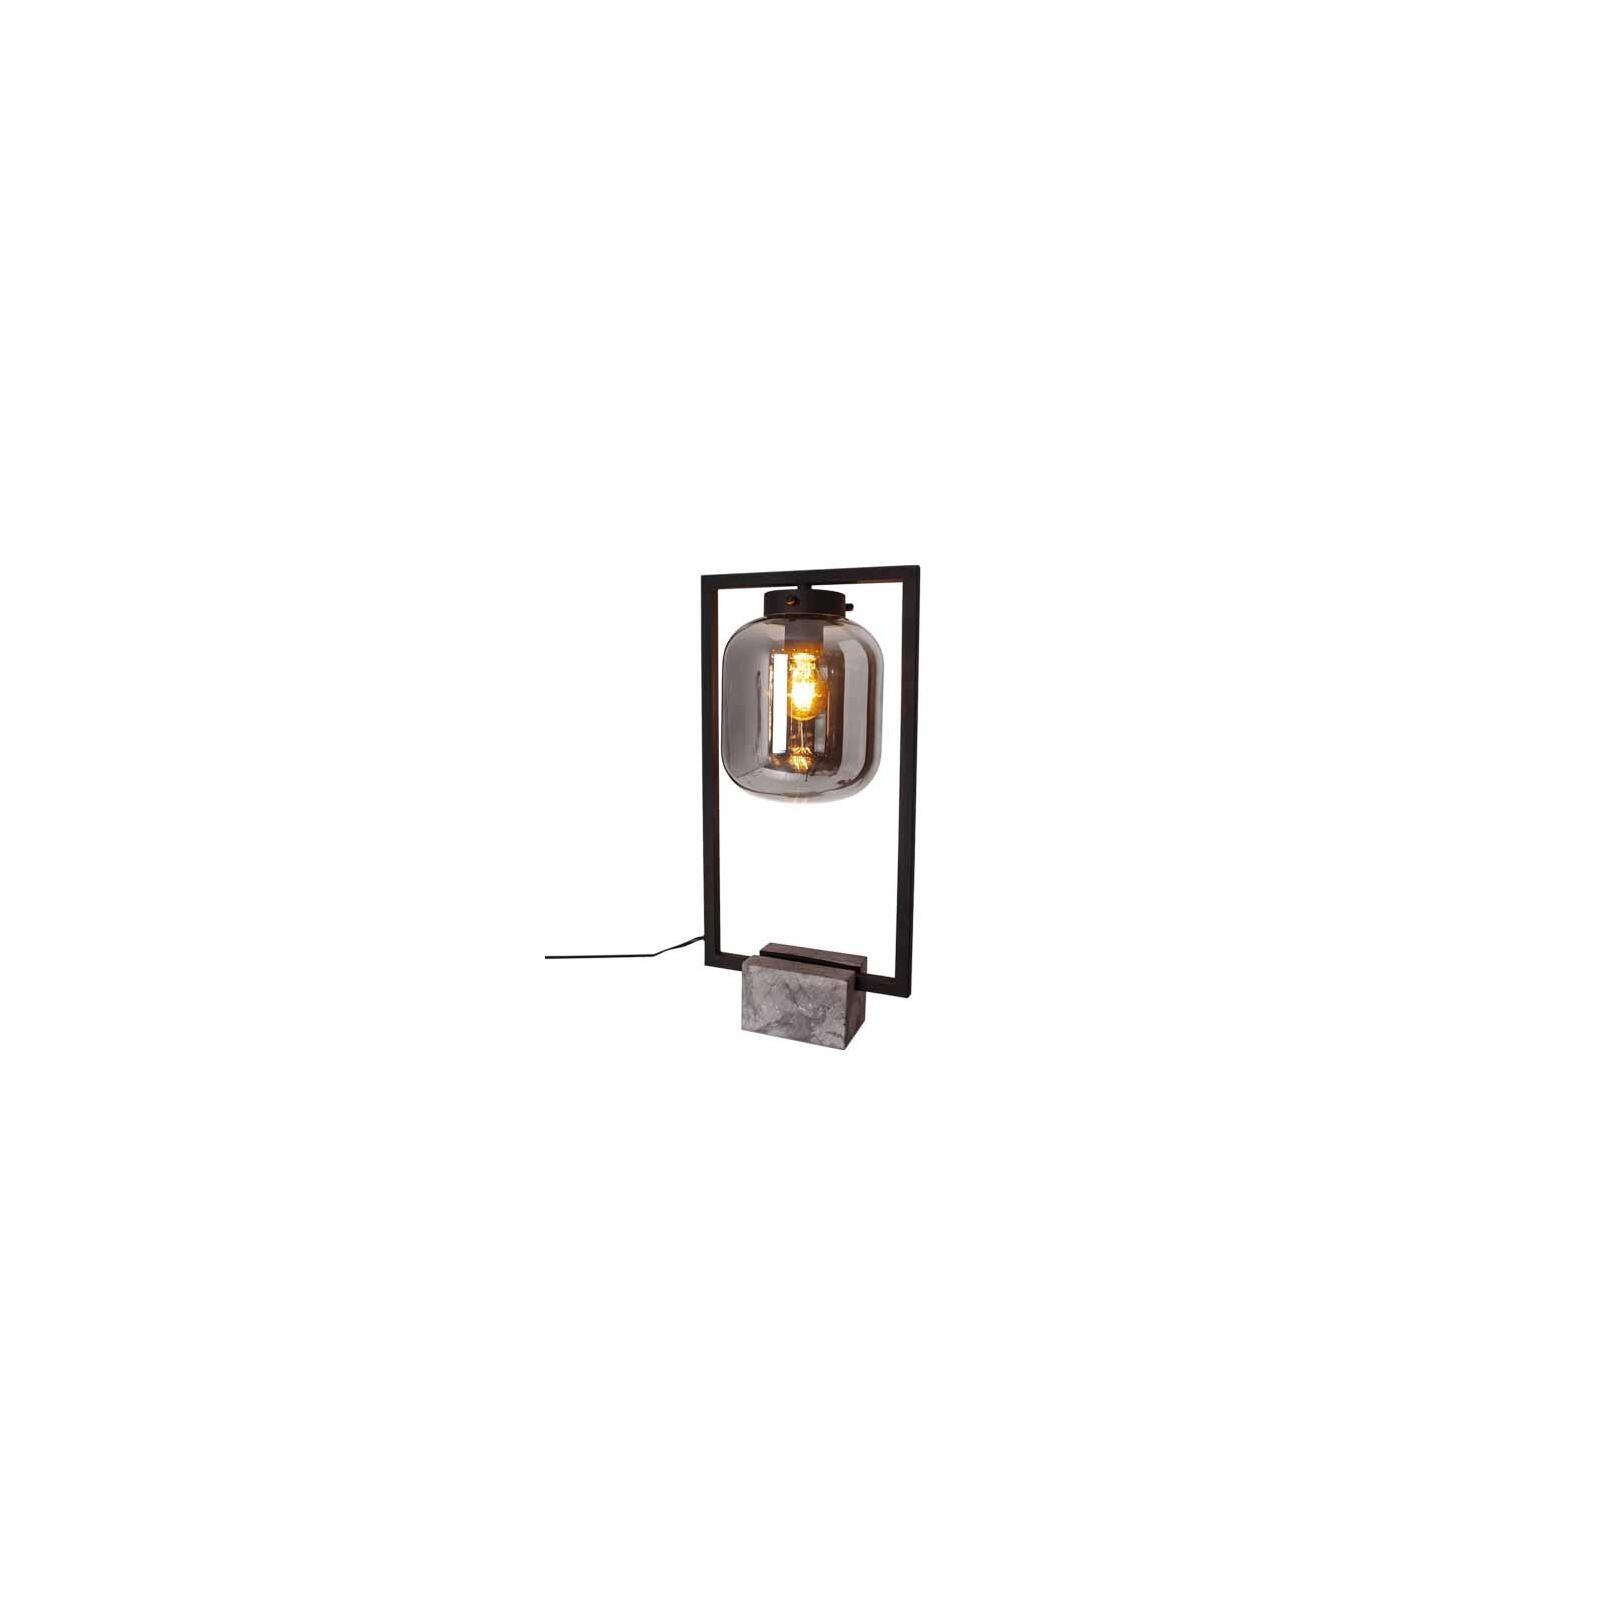 & Metall Leuchten Dixton schwarz Höhe 52cm Rydens - Glasschirm By Tischleuchte Lampen rauchgrau Onlineshop